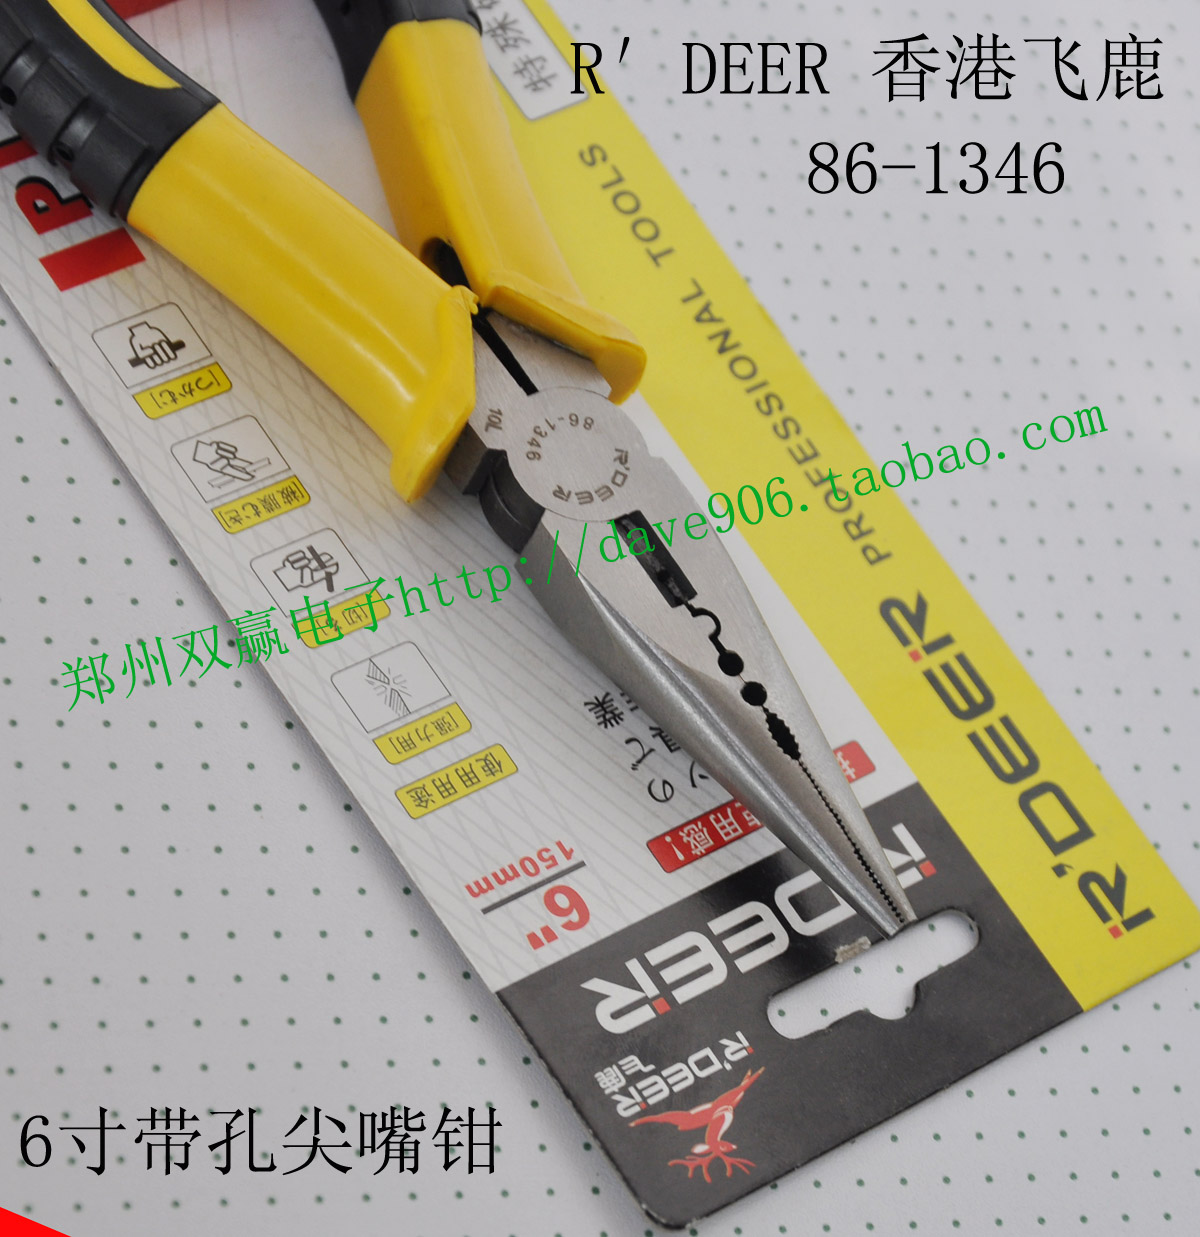 R′DEER香港飞鹿 85-346/326 6寸/150mm 带齿带孔尖嘴钳 黄色手柄